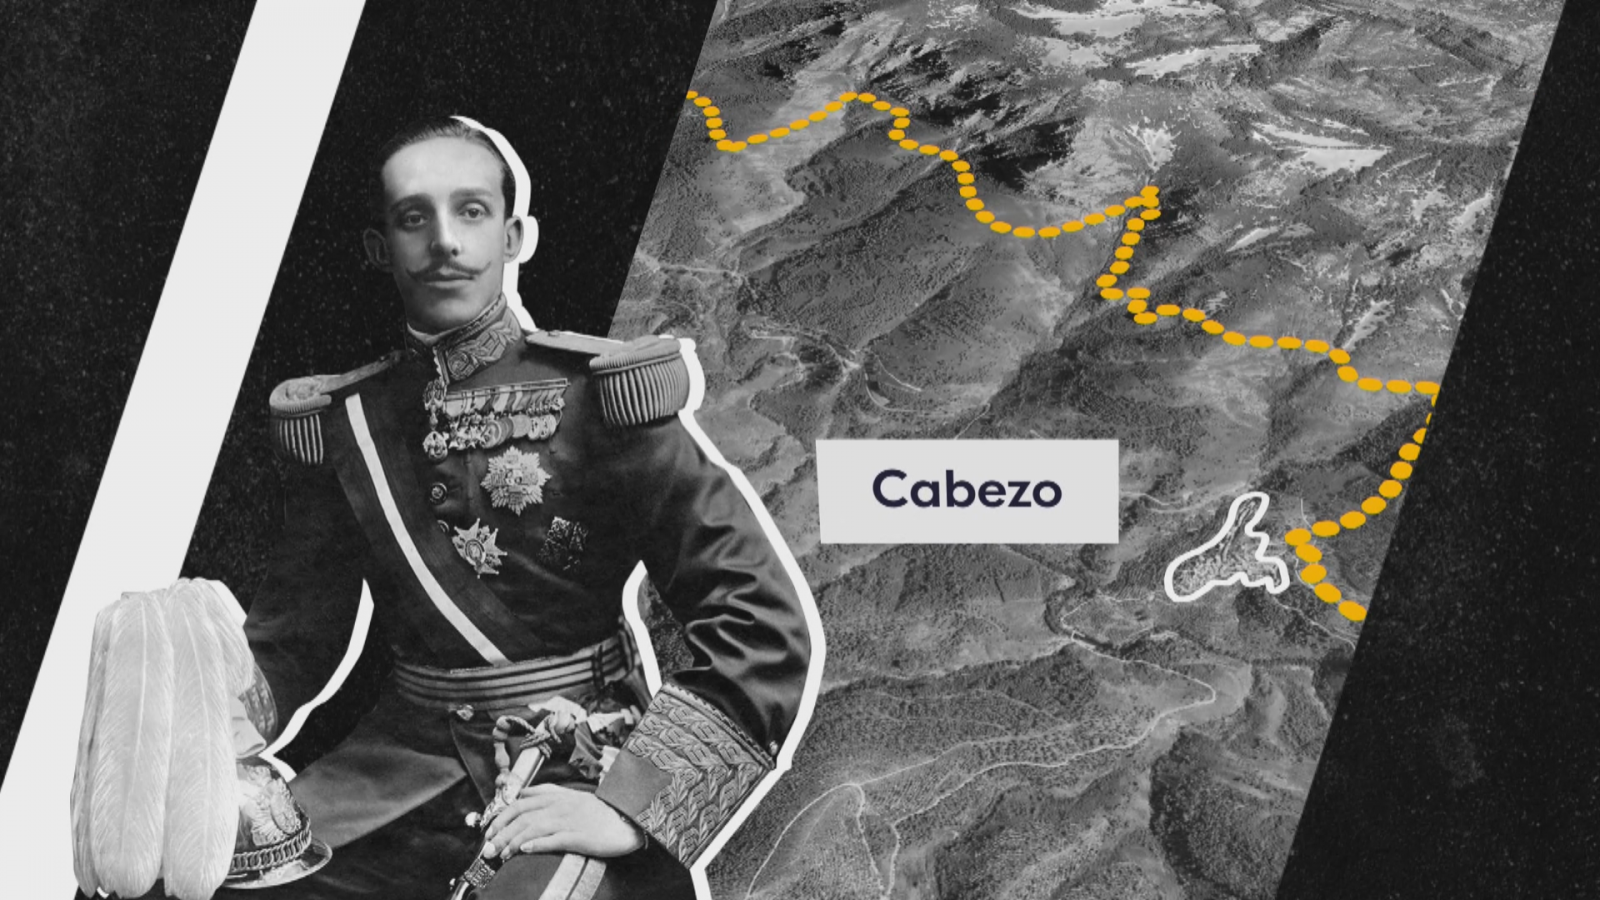 Centenario de la visita de Alfonso XIII a Las Hurdes - Ver ahora